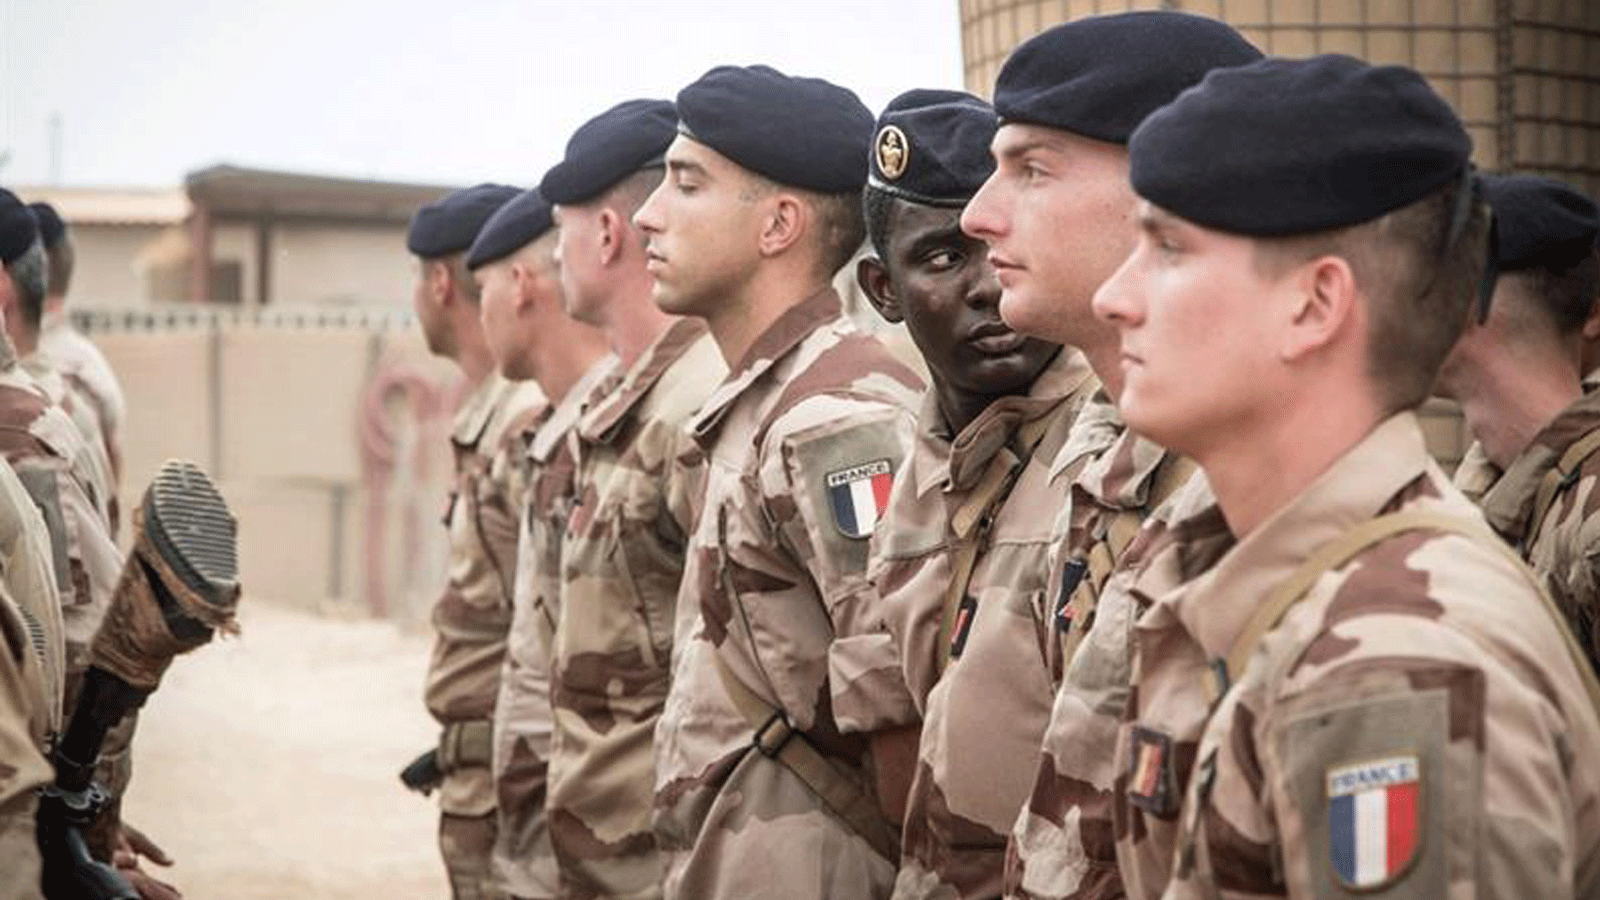 الجنود الفرنسيون يقفون في حالة من الانتباه أثناء انتظارهم مراسم تسليم قاعدة برخان العسكرية للجيش المالي في تمبكتو، في 14 كانون الأول/ ديسمبر 2021.